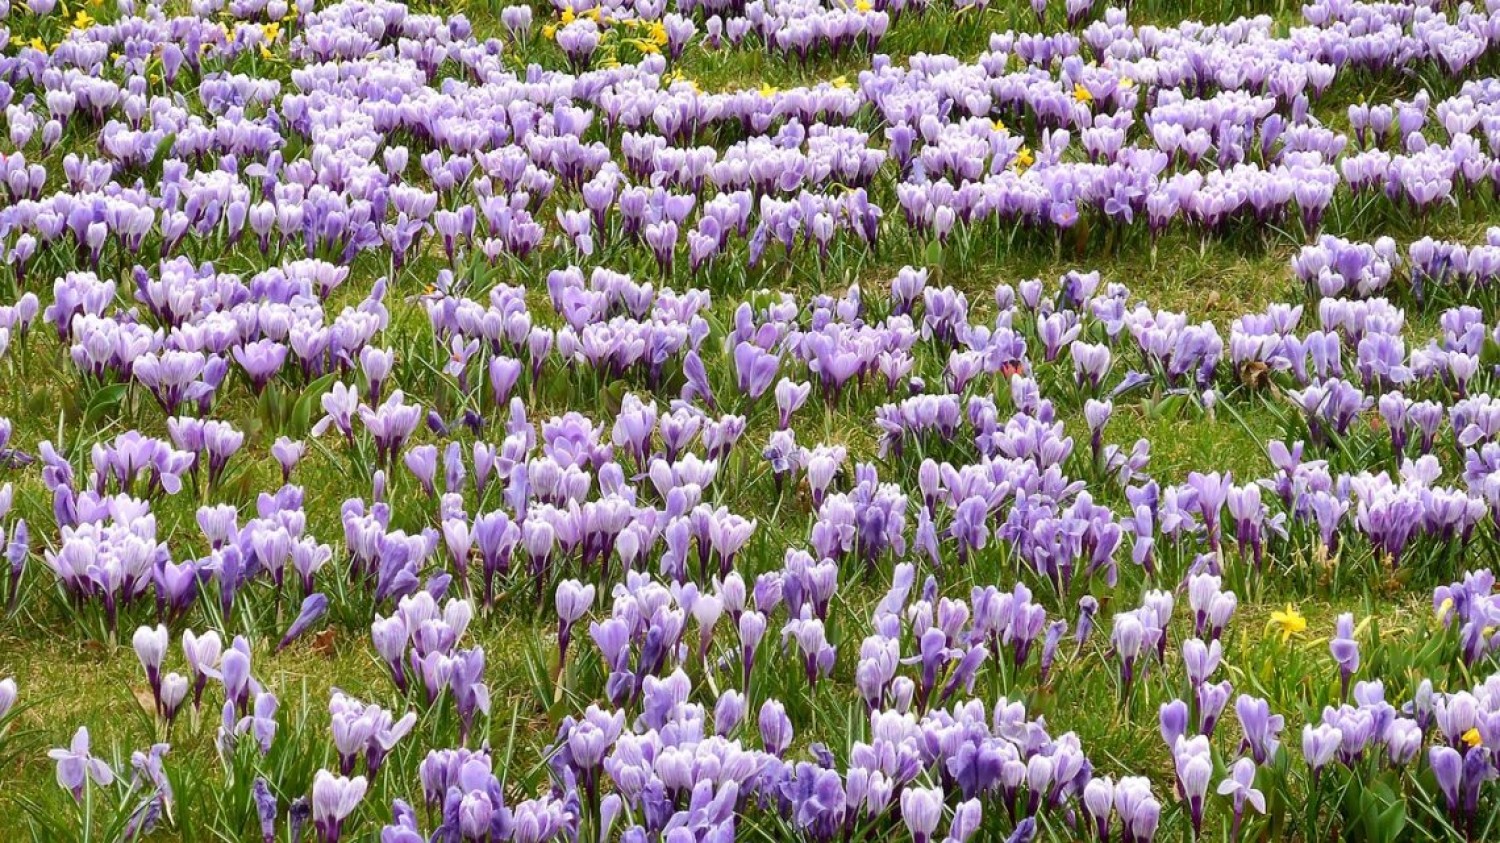 Varázslatos sáfránymező - már virágzik a tavasz egyik első hírnöke